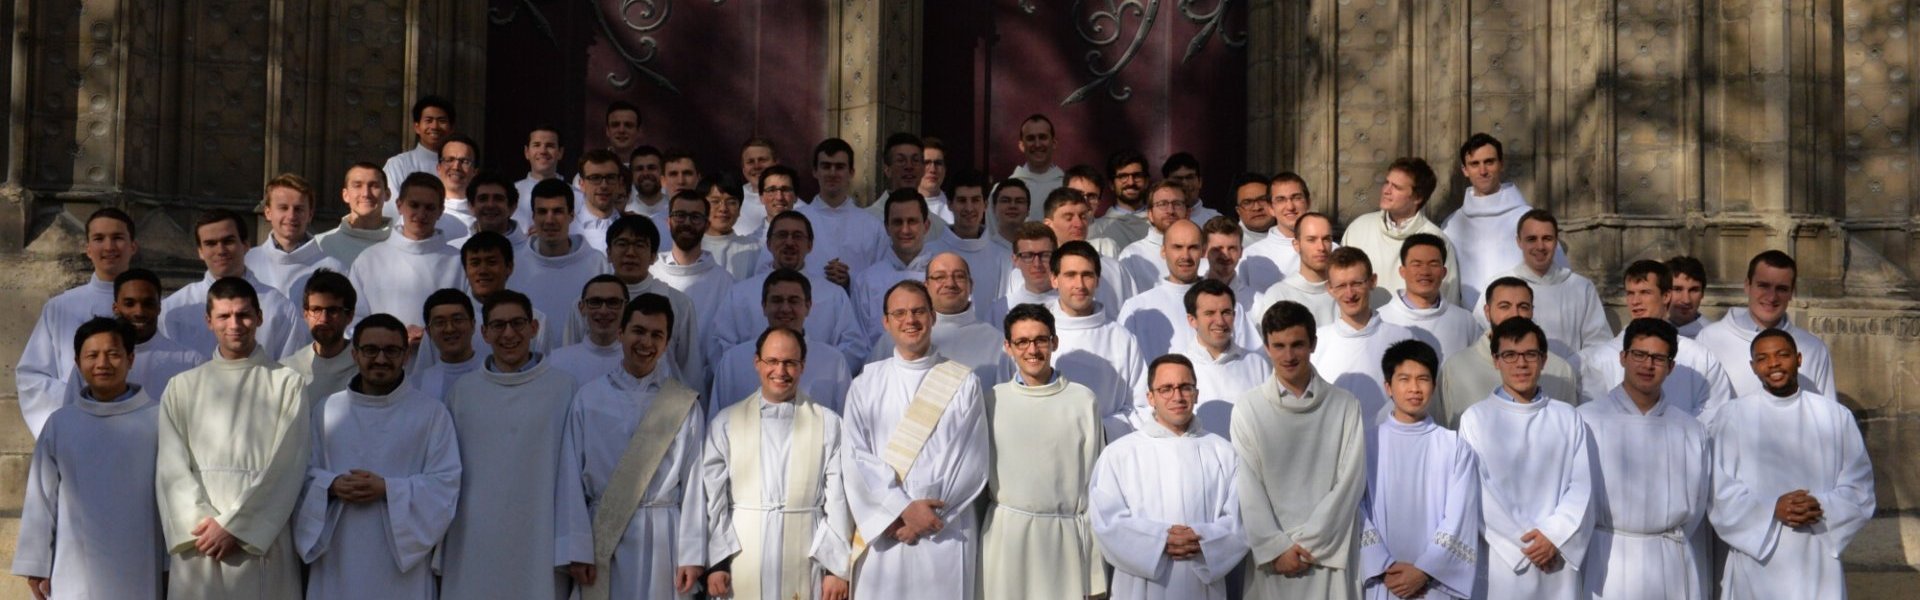 Messe chrismale à Notre-Dame de Paris en 2018. (c) D. R..